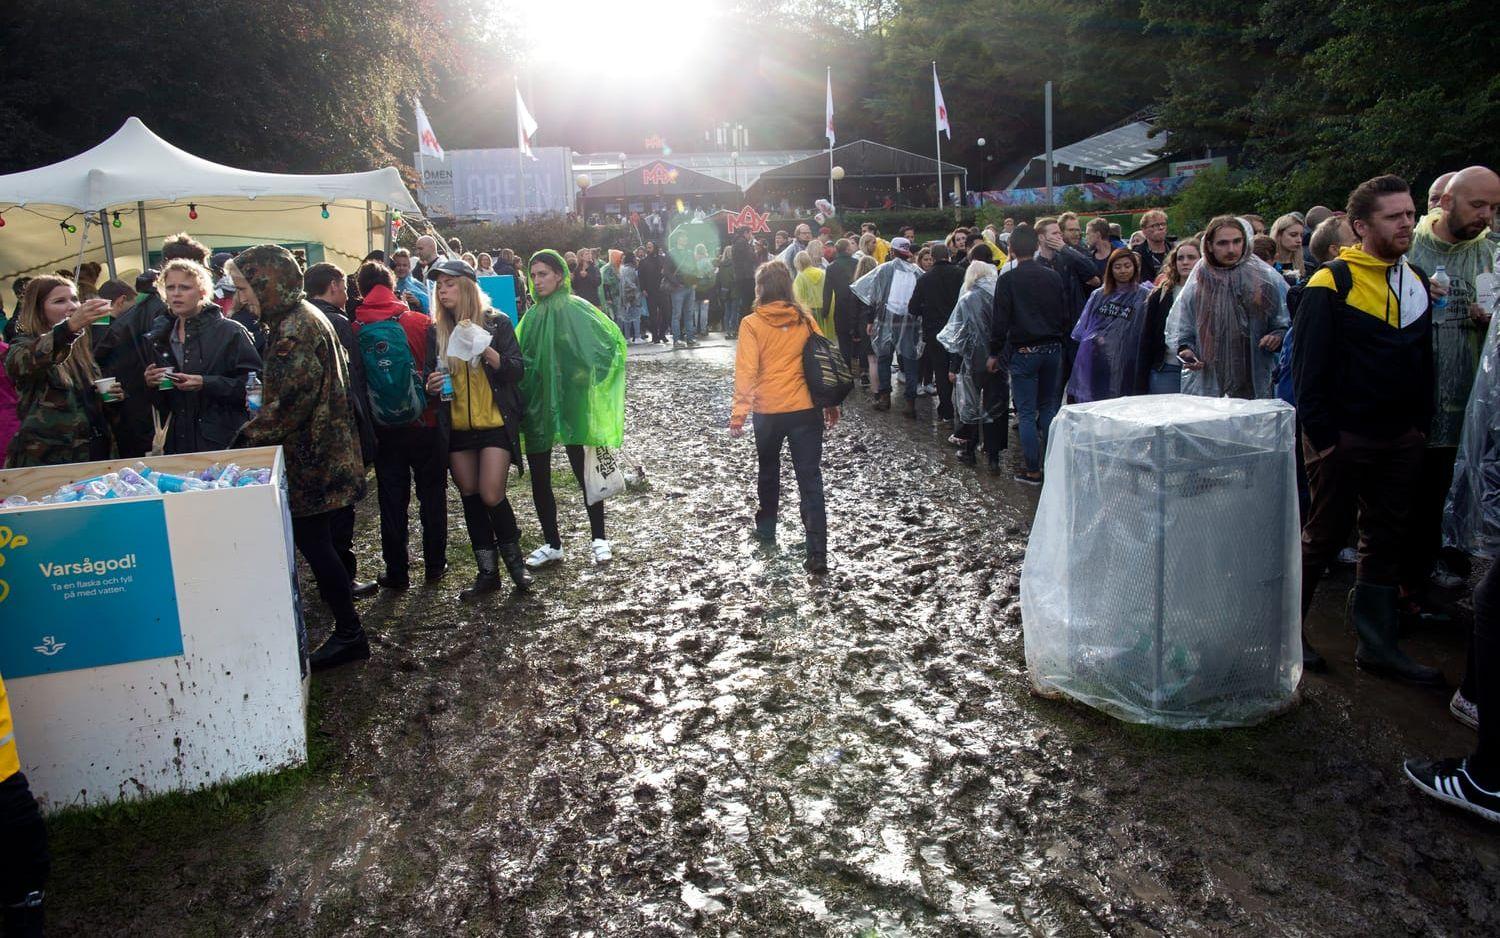 Förra året var det riktigt lerigt på festivalen - oavsett väder så är säkerheten hög. Arkivbild: TT
